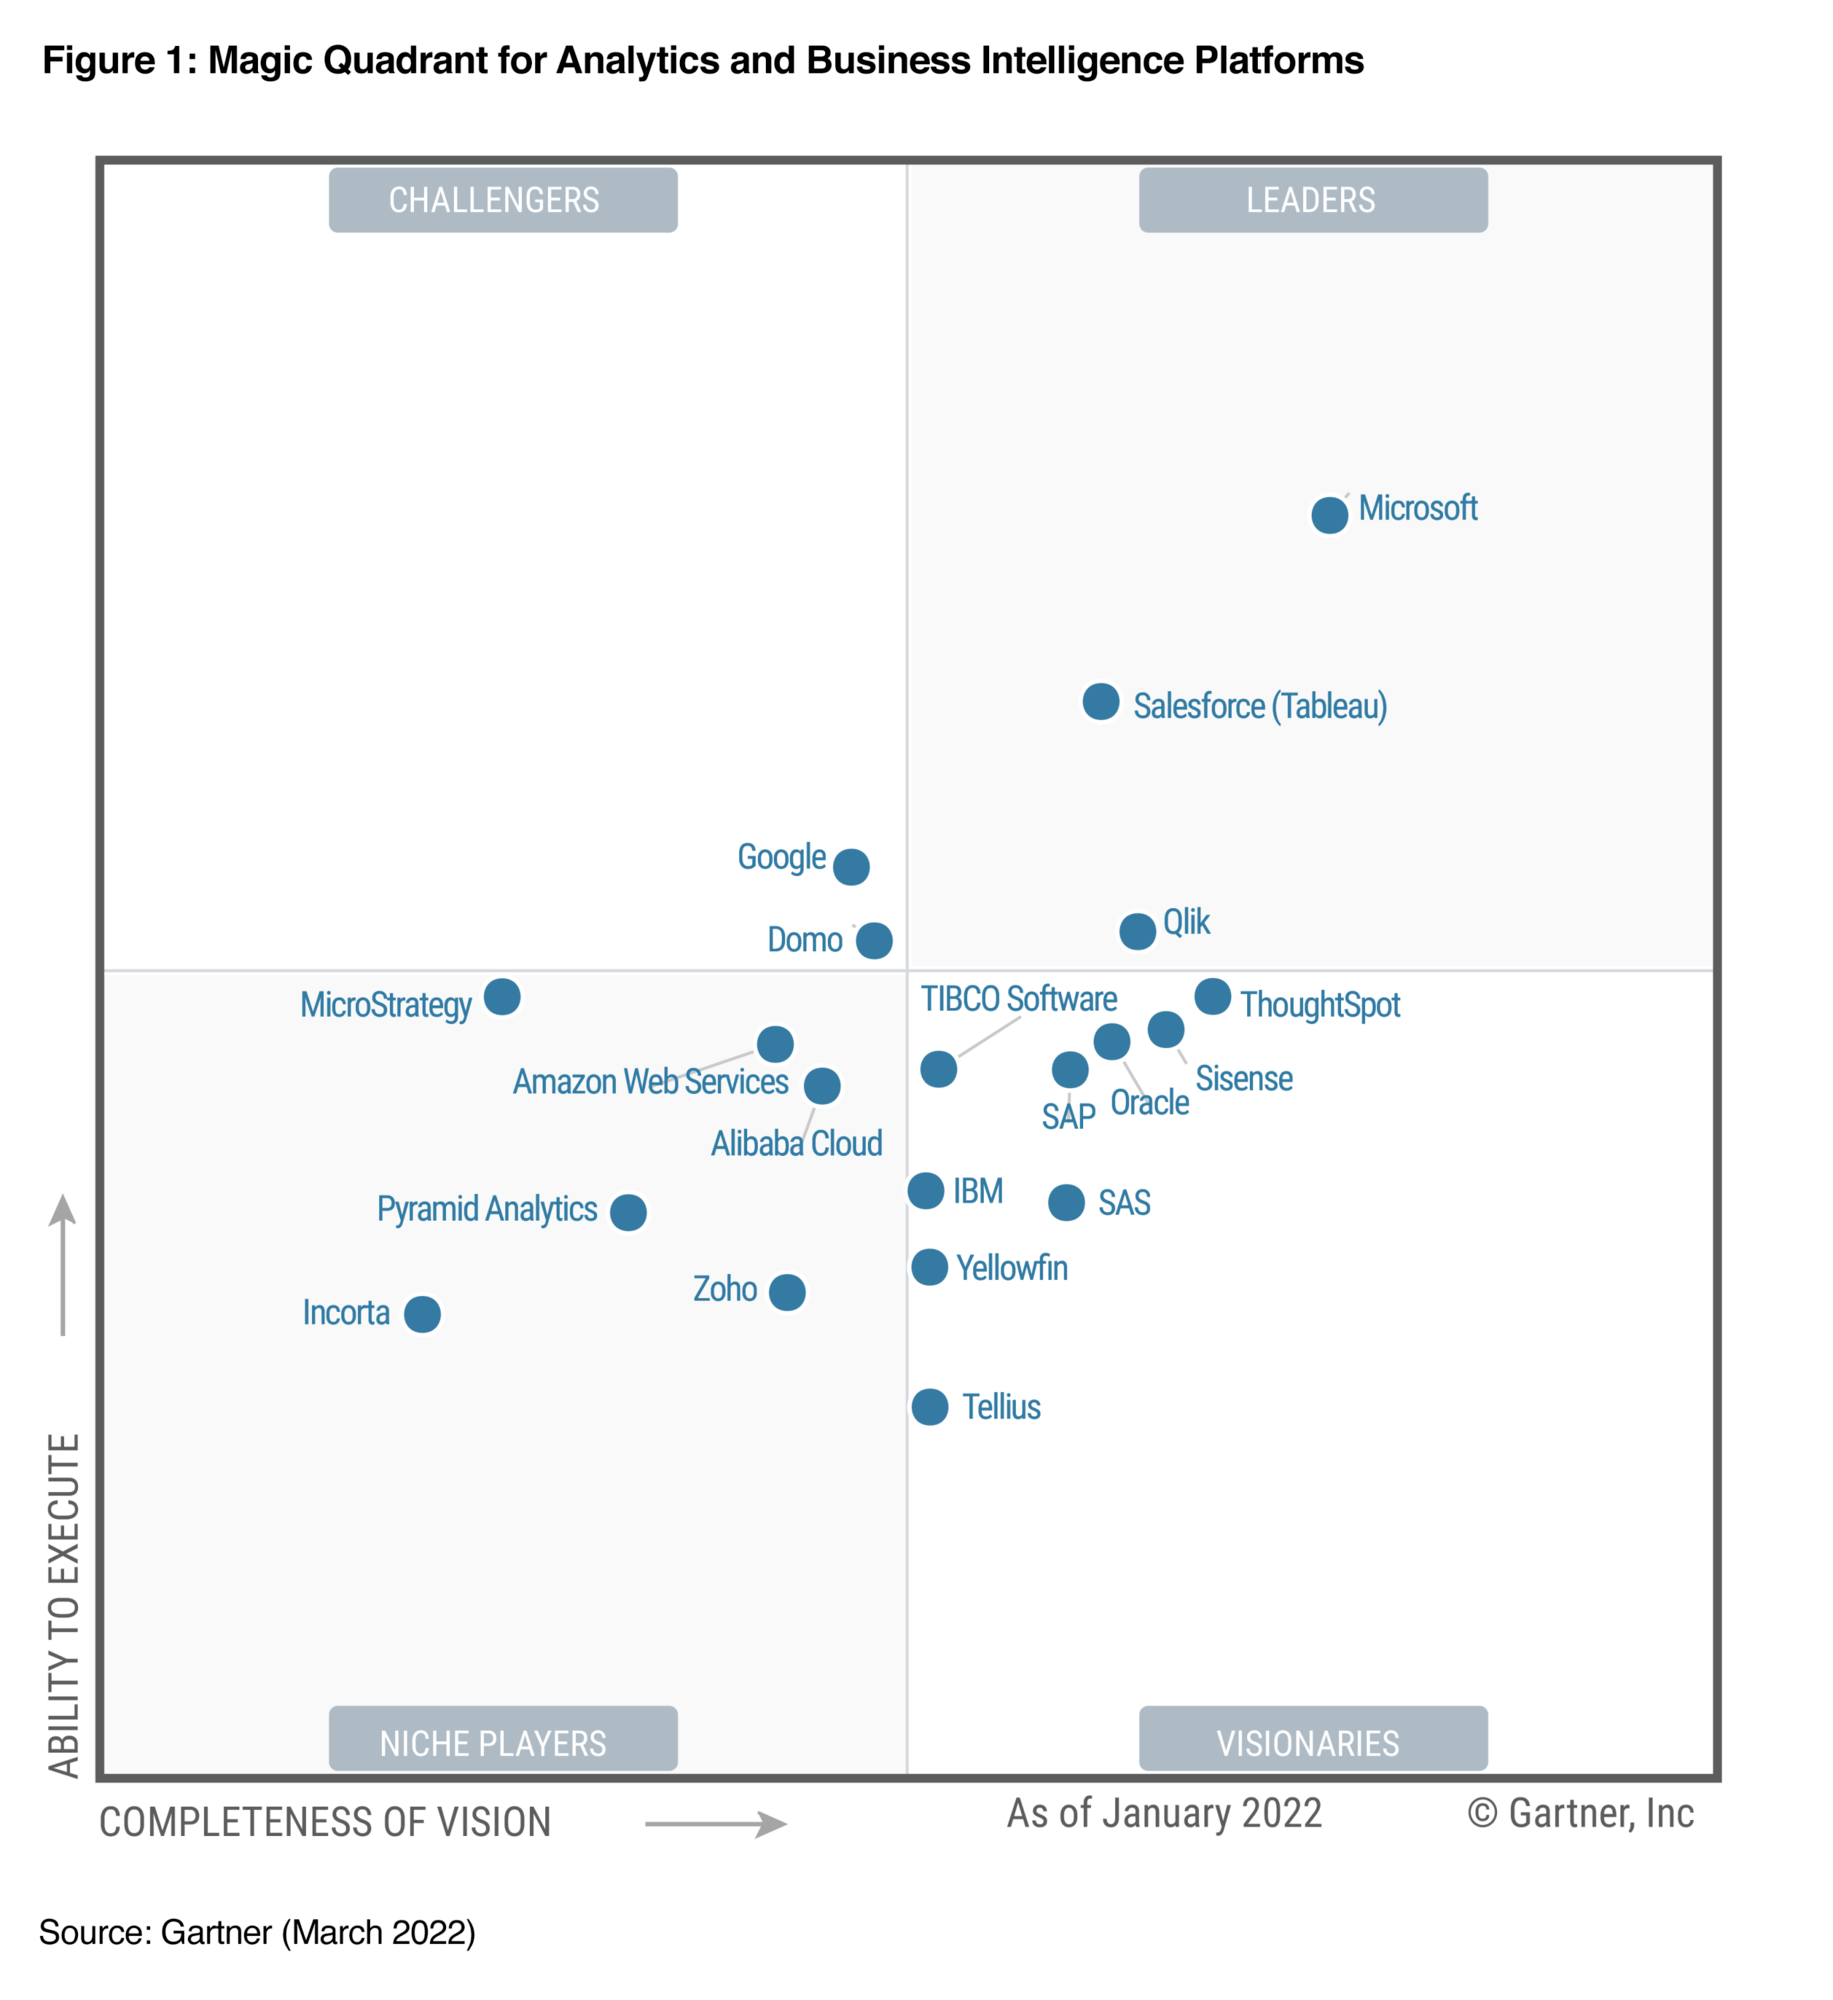 Immagine del Gartner Magic Quadrant 2022 per le piattaforme di analisi e business intelligence, con Salesforce (Tableau) nel quadrante Leader